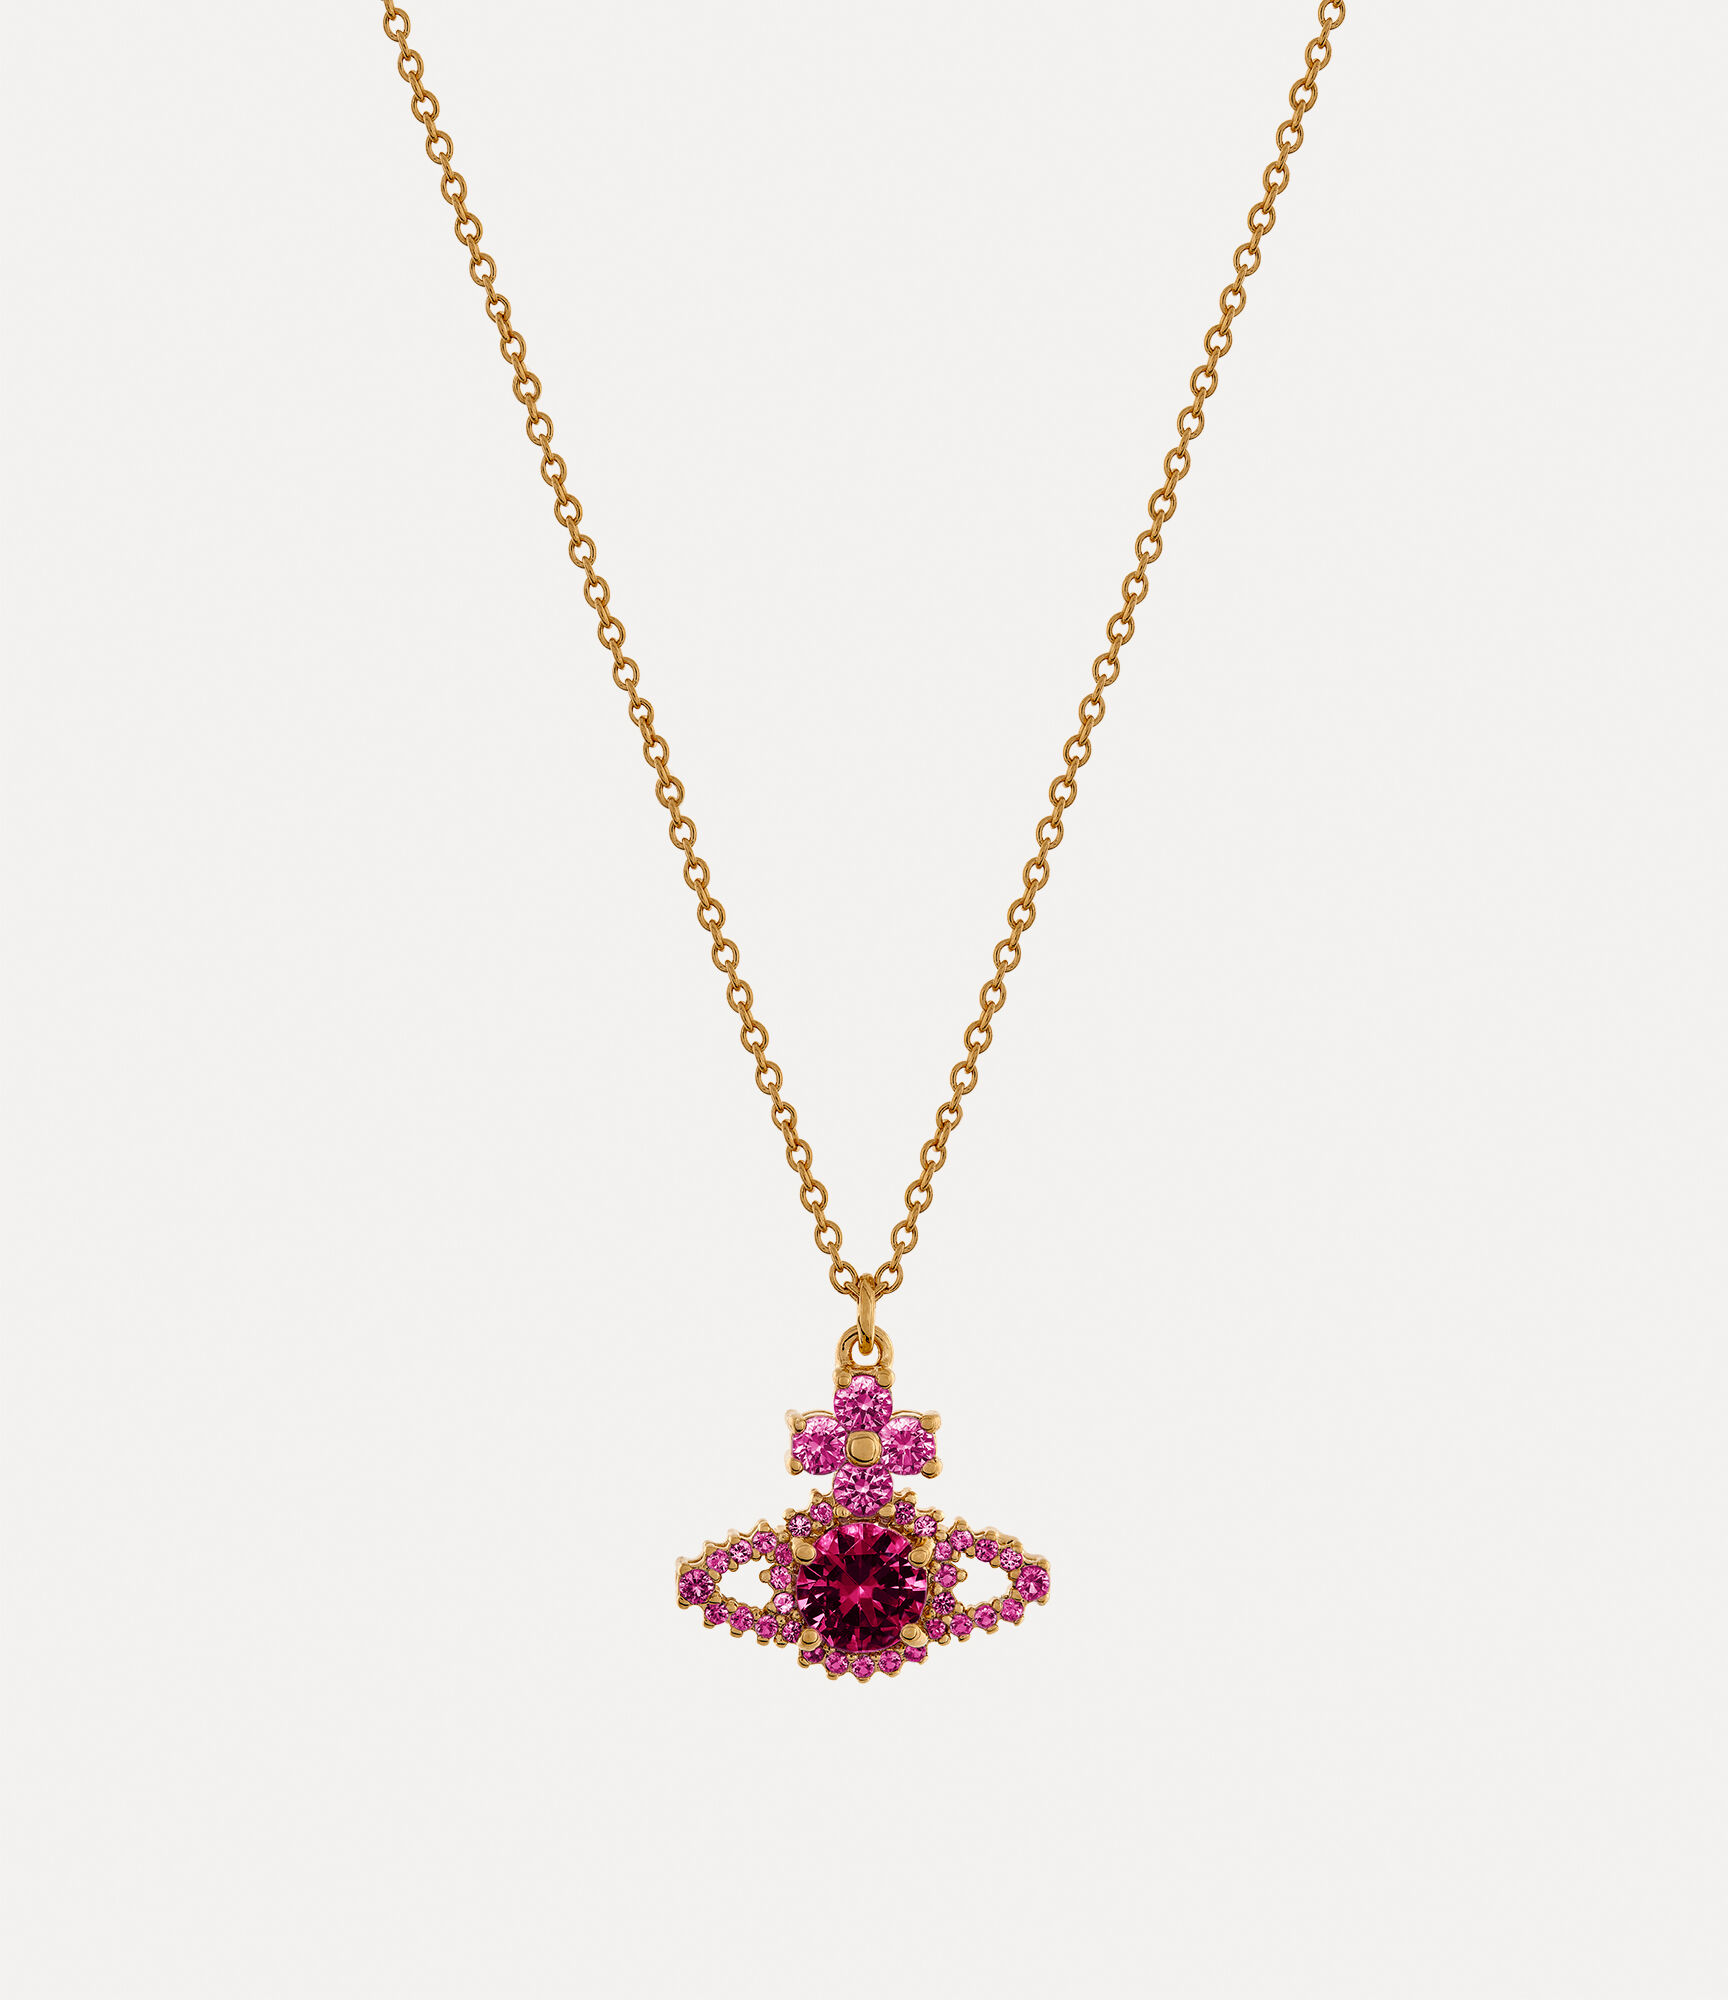 VIVIENNE WESTWOOD LARGE Pendant Gold Pearl Orb Orbit BAs Long Chain Necklace  £35.00 - PicClick UK